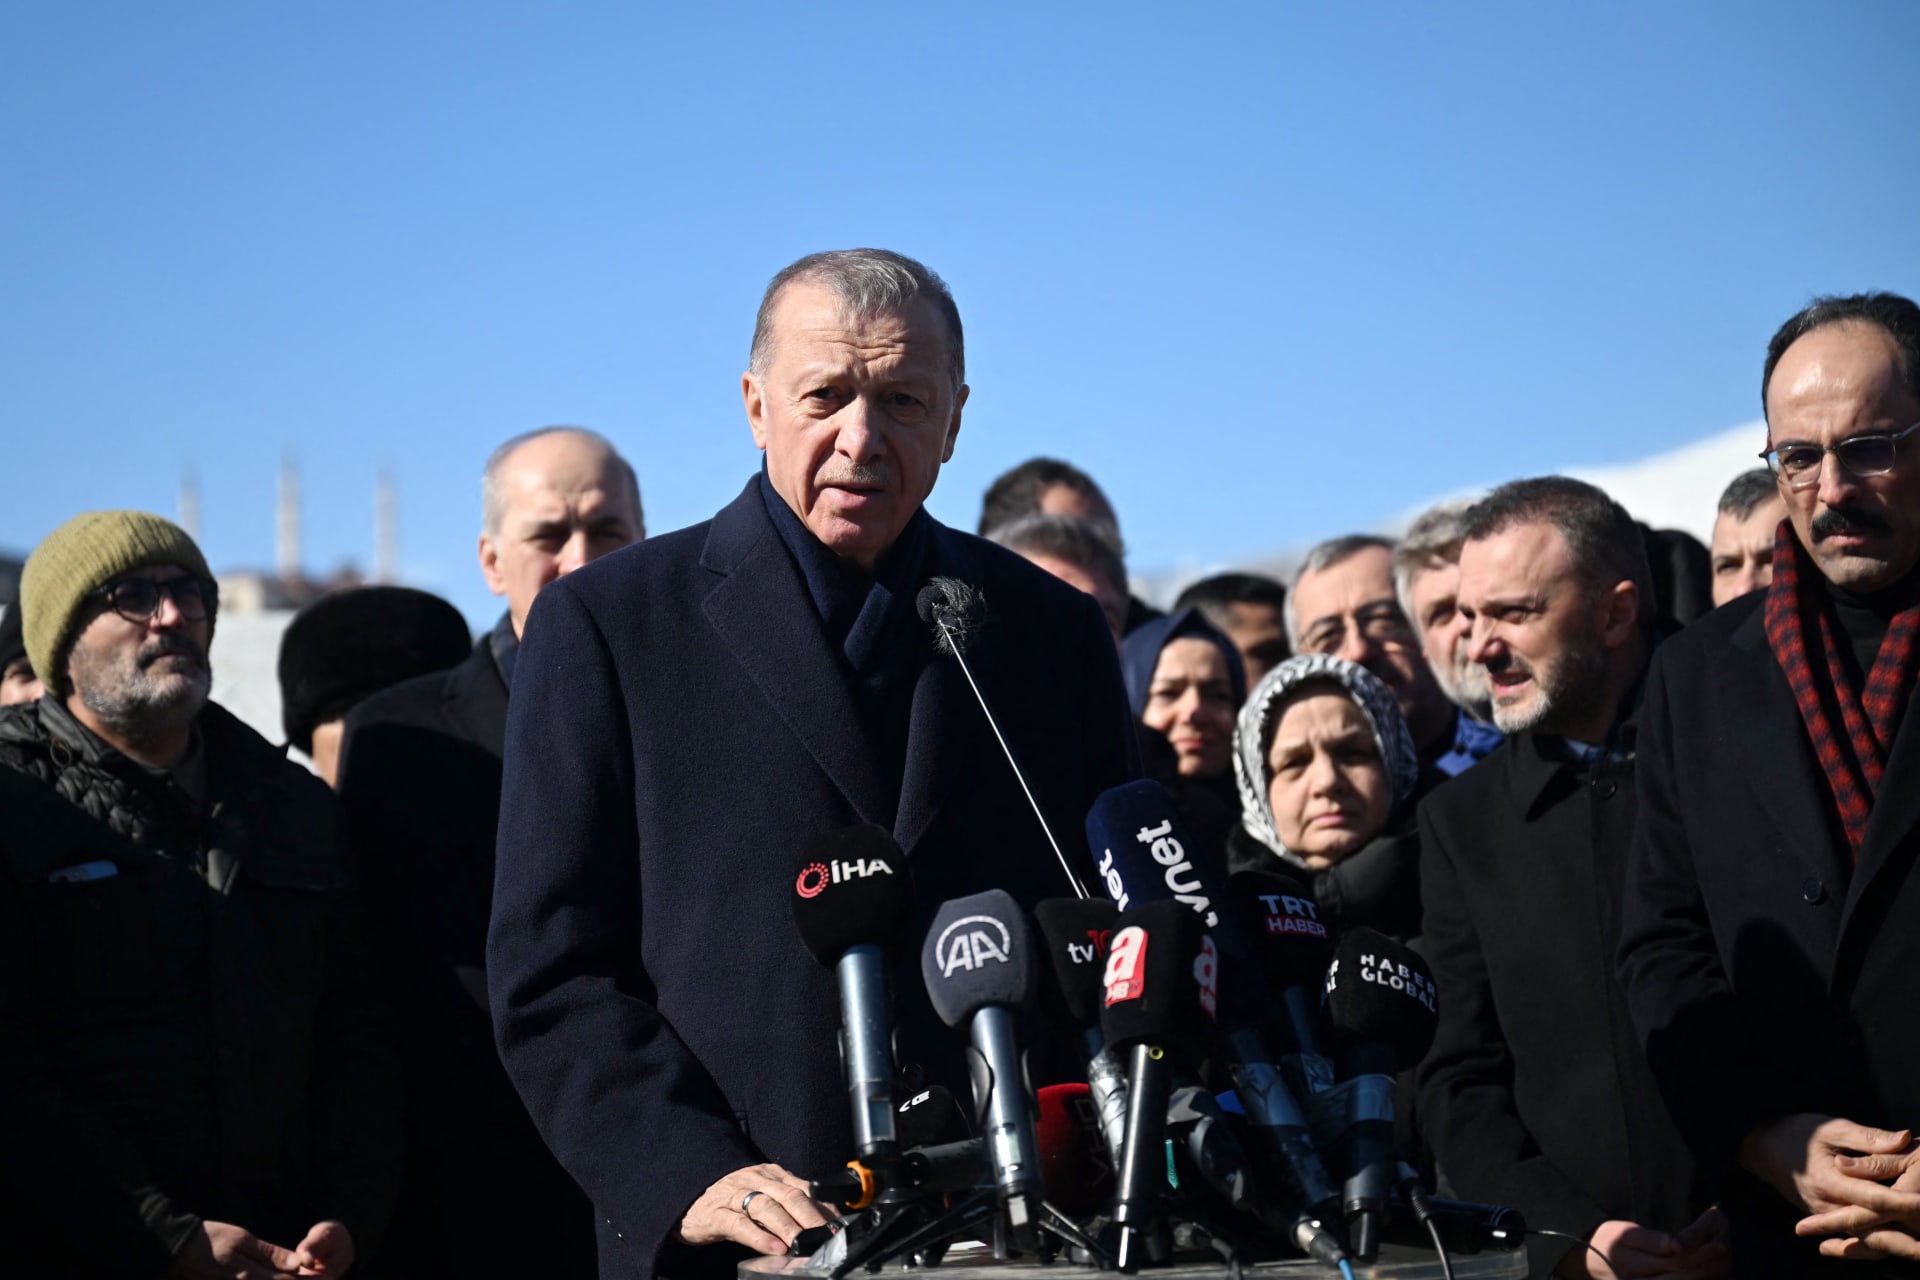 أردوغان يعترف بحدوث "قصور" في التعامل مع الزلزال ويرد على "الحملات"